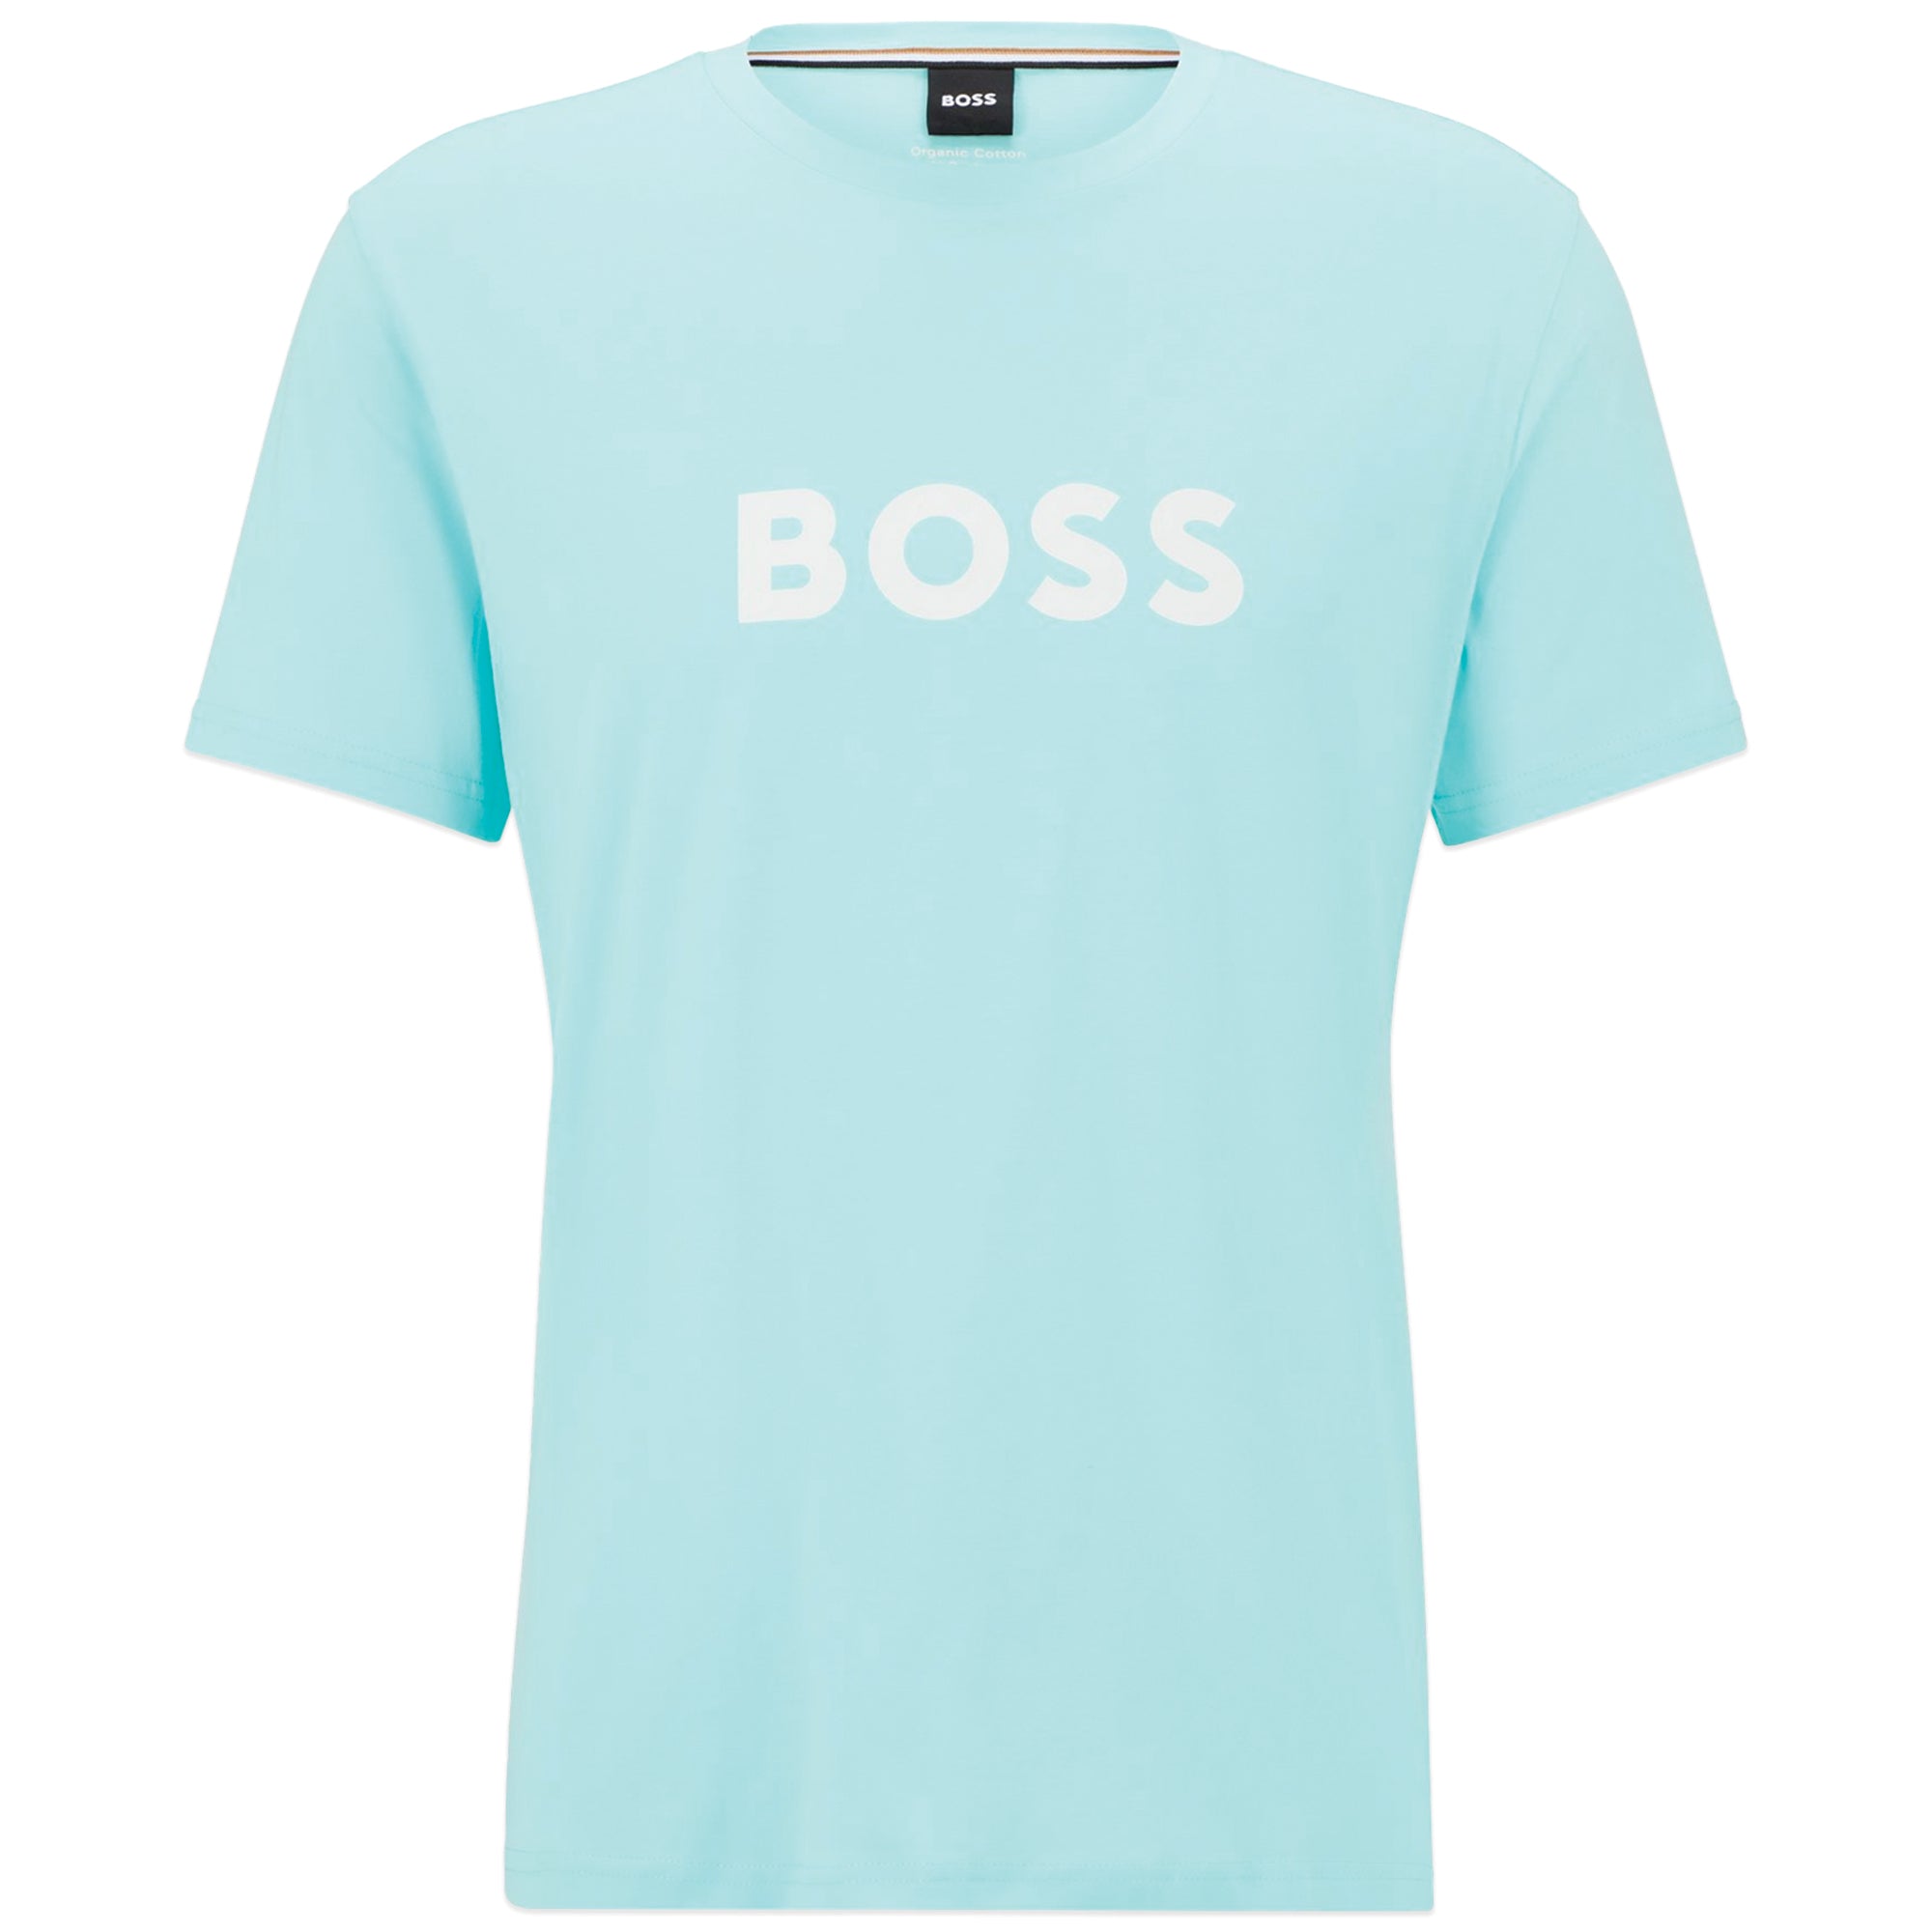 Boss RN T-Shirt - Spearmint Green